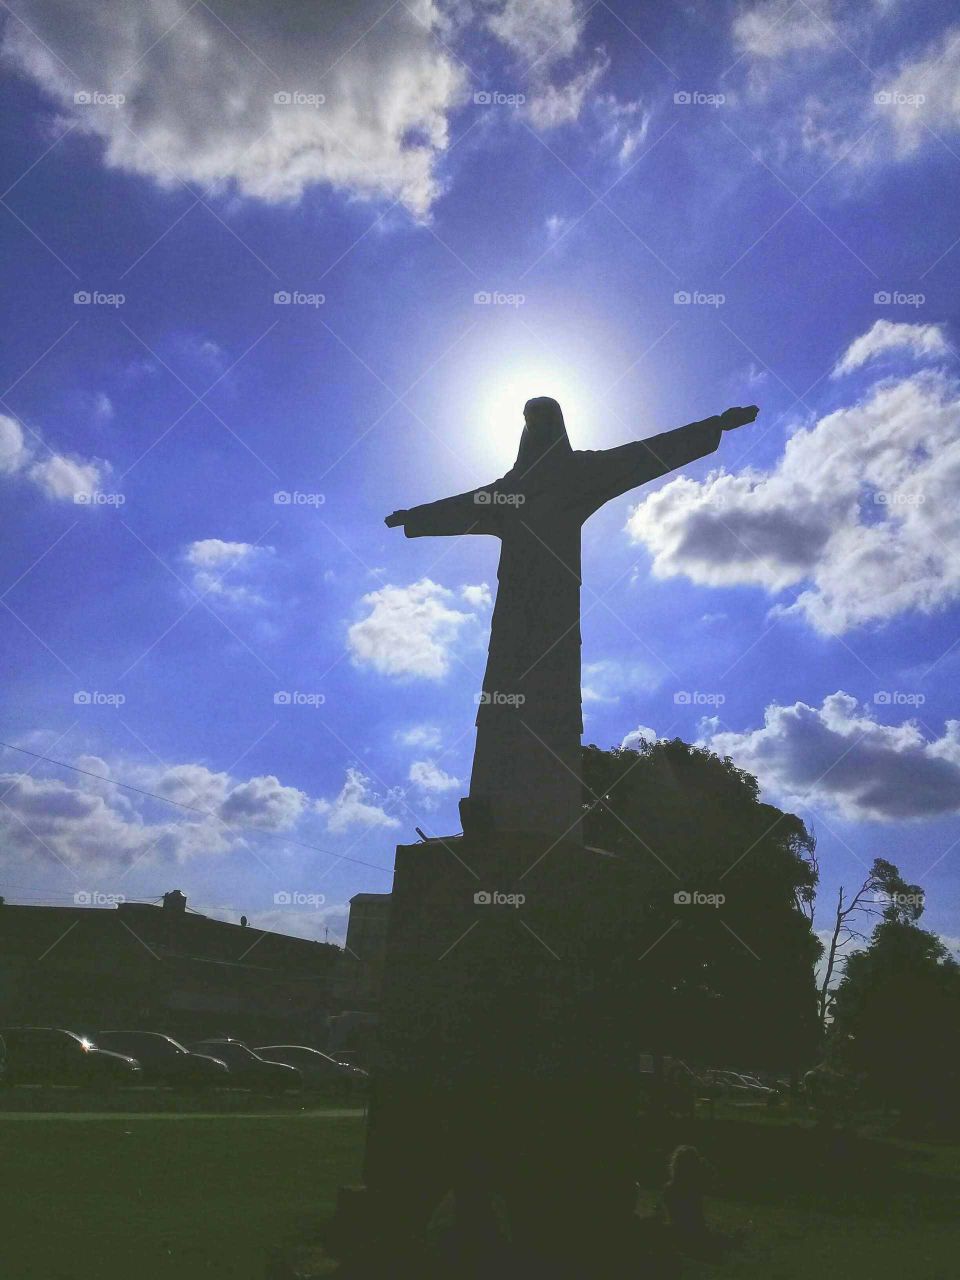 imitación de la estatua del Cristo Redentor emplazada en una plaza de barrio, destacándose su silueta en un cielo muy azul, soleado y con algunas nubes.